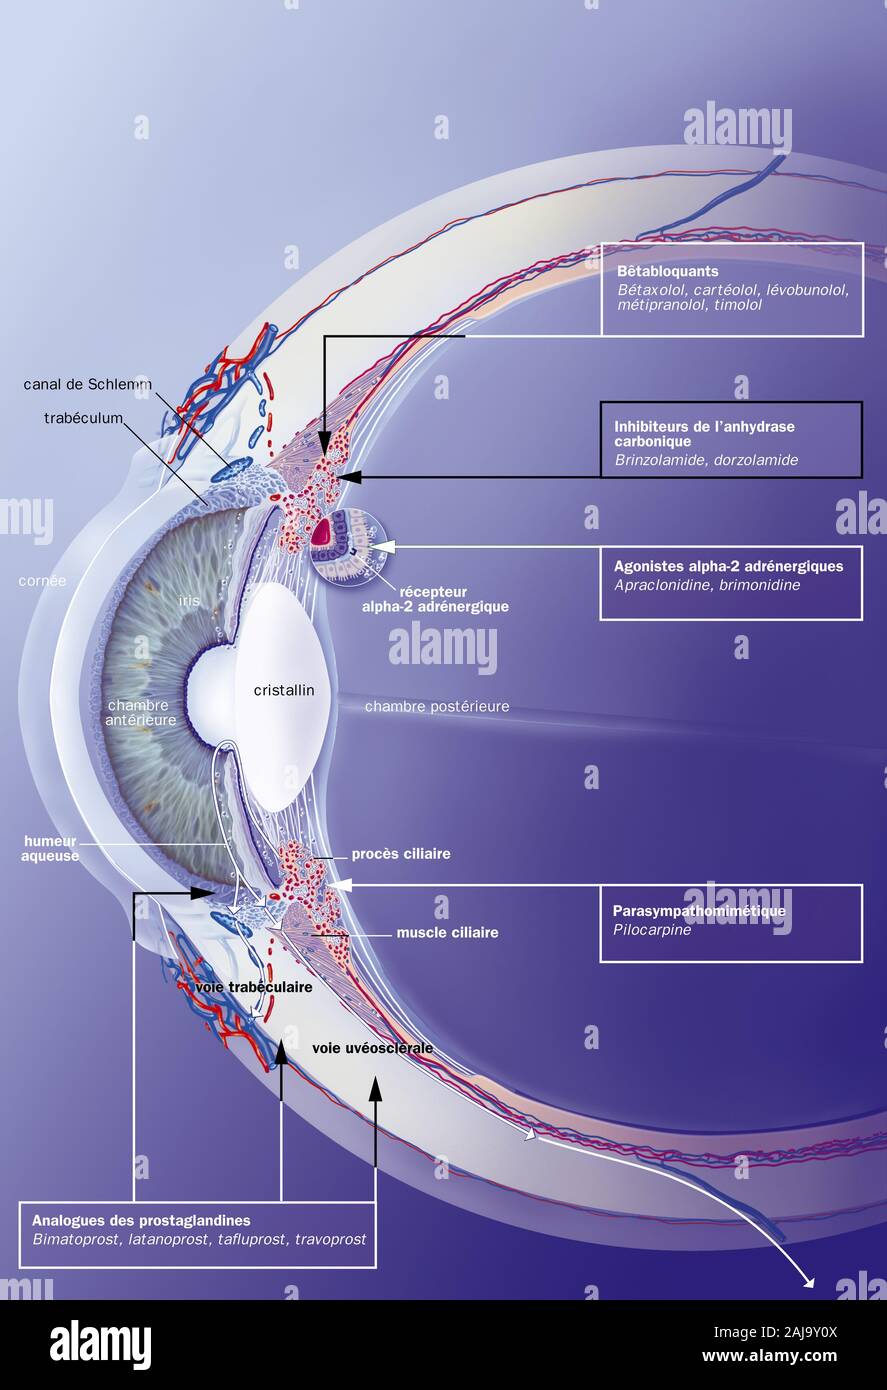 Canale di Schlemm, trabeculum, umor acqueo, trattamenti. Sezione sagittale  dell'occhio con, dietro la cornea, la camera anteriore, l'iride e la crys  Foto stock - Alamy